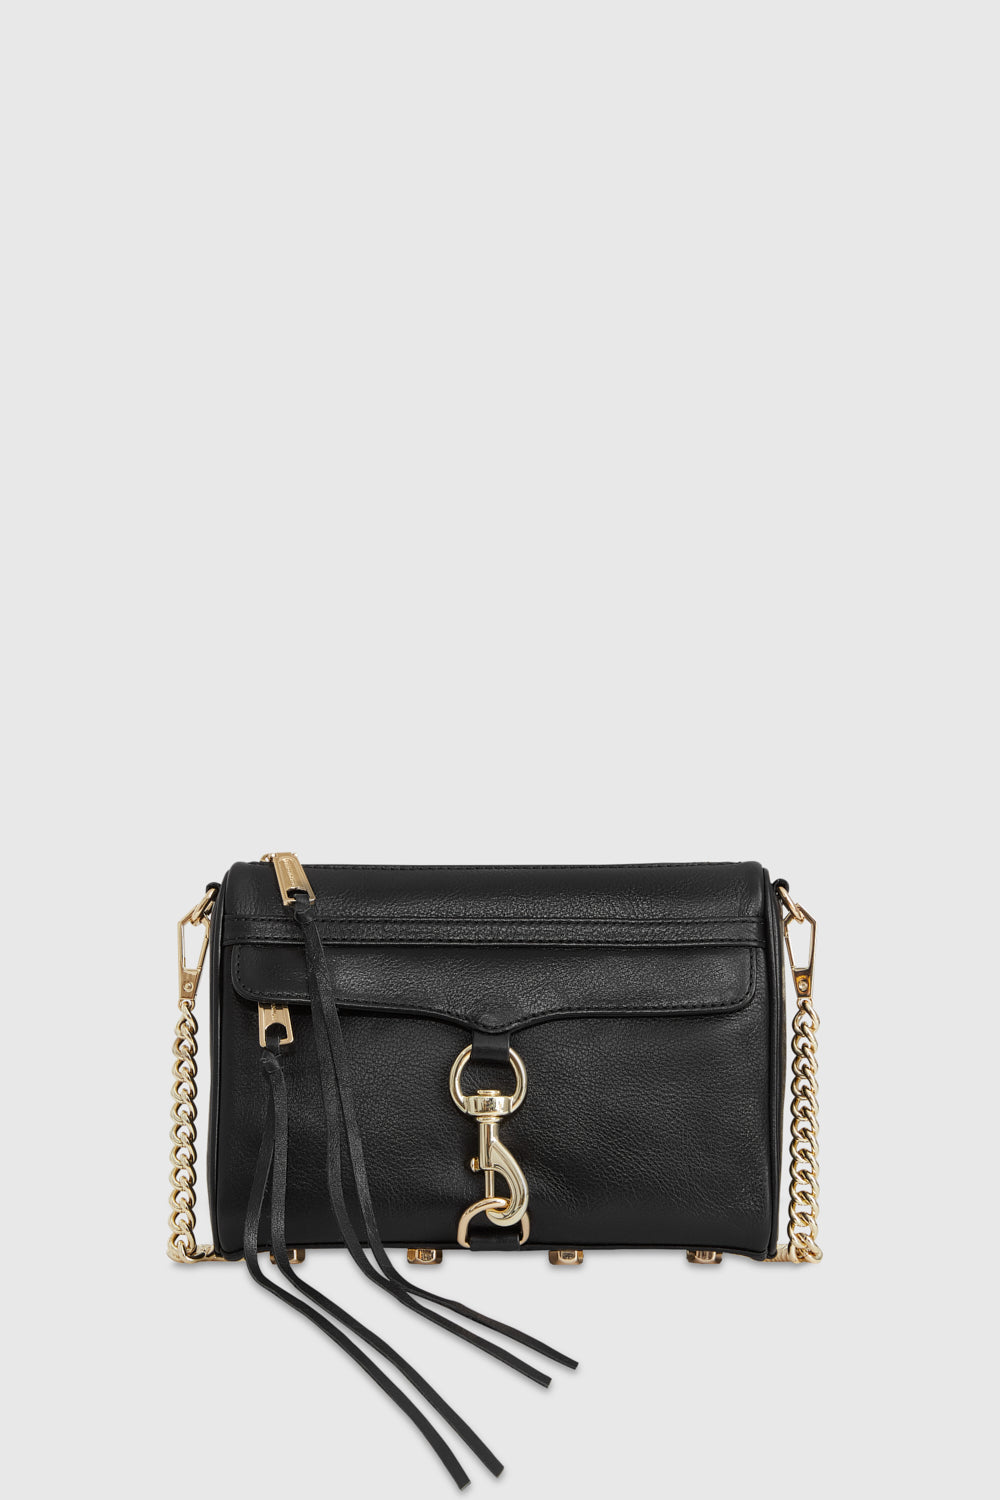 Rebecca Minkoff Mini M.A.C. Bag In Black/Light Gold